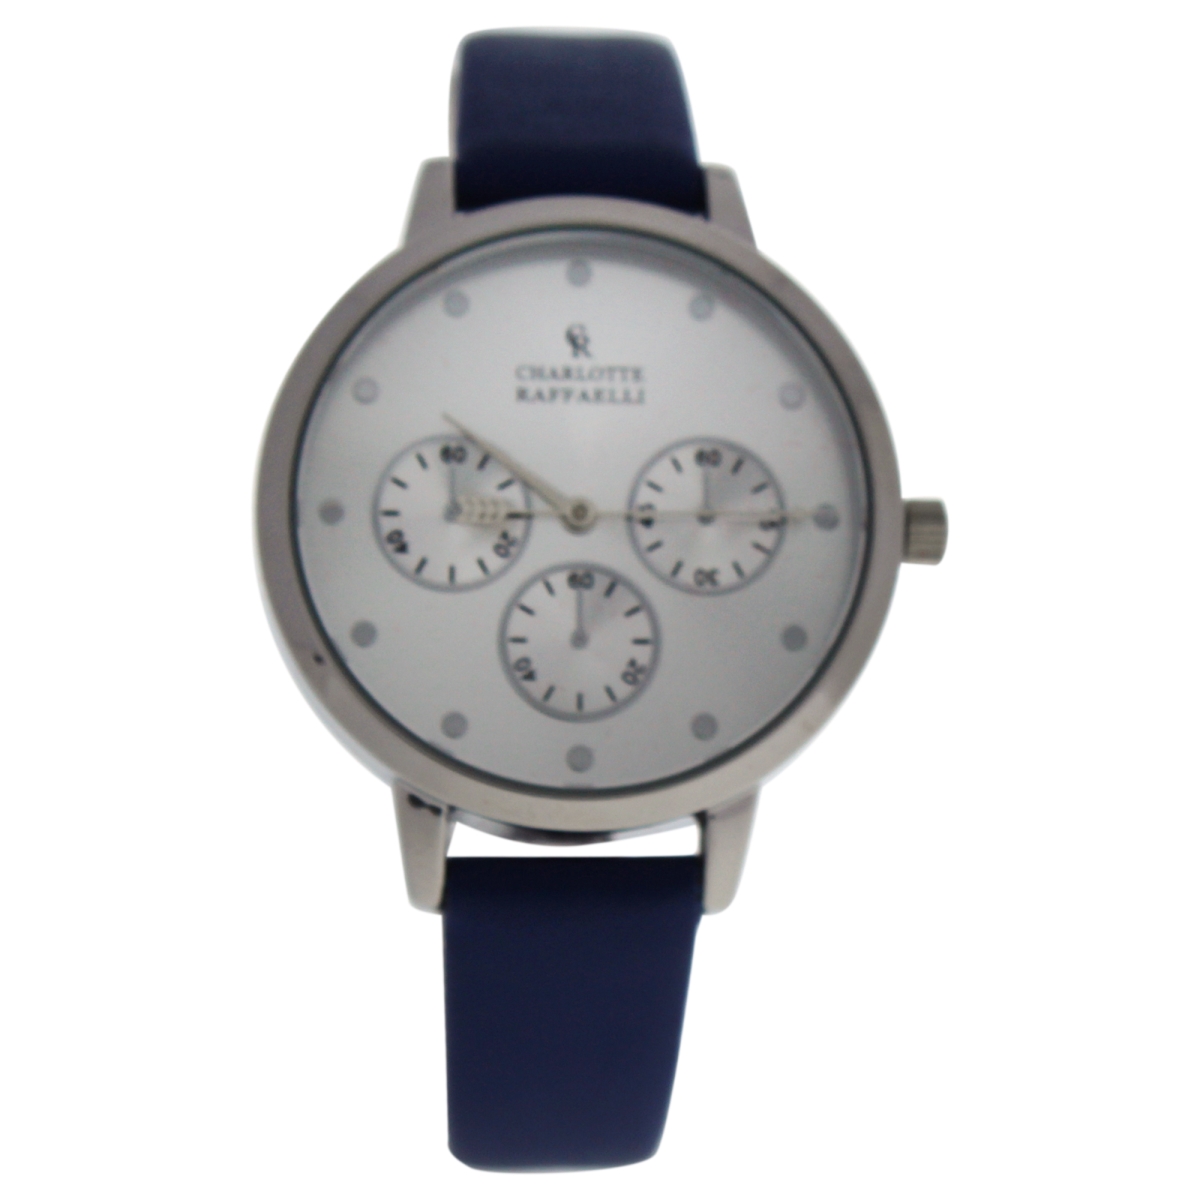 W-wat-1513 La Basic - Silver & Blue Leather Strap Watch For Women - Crb013